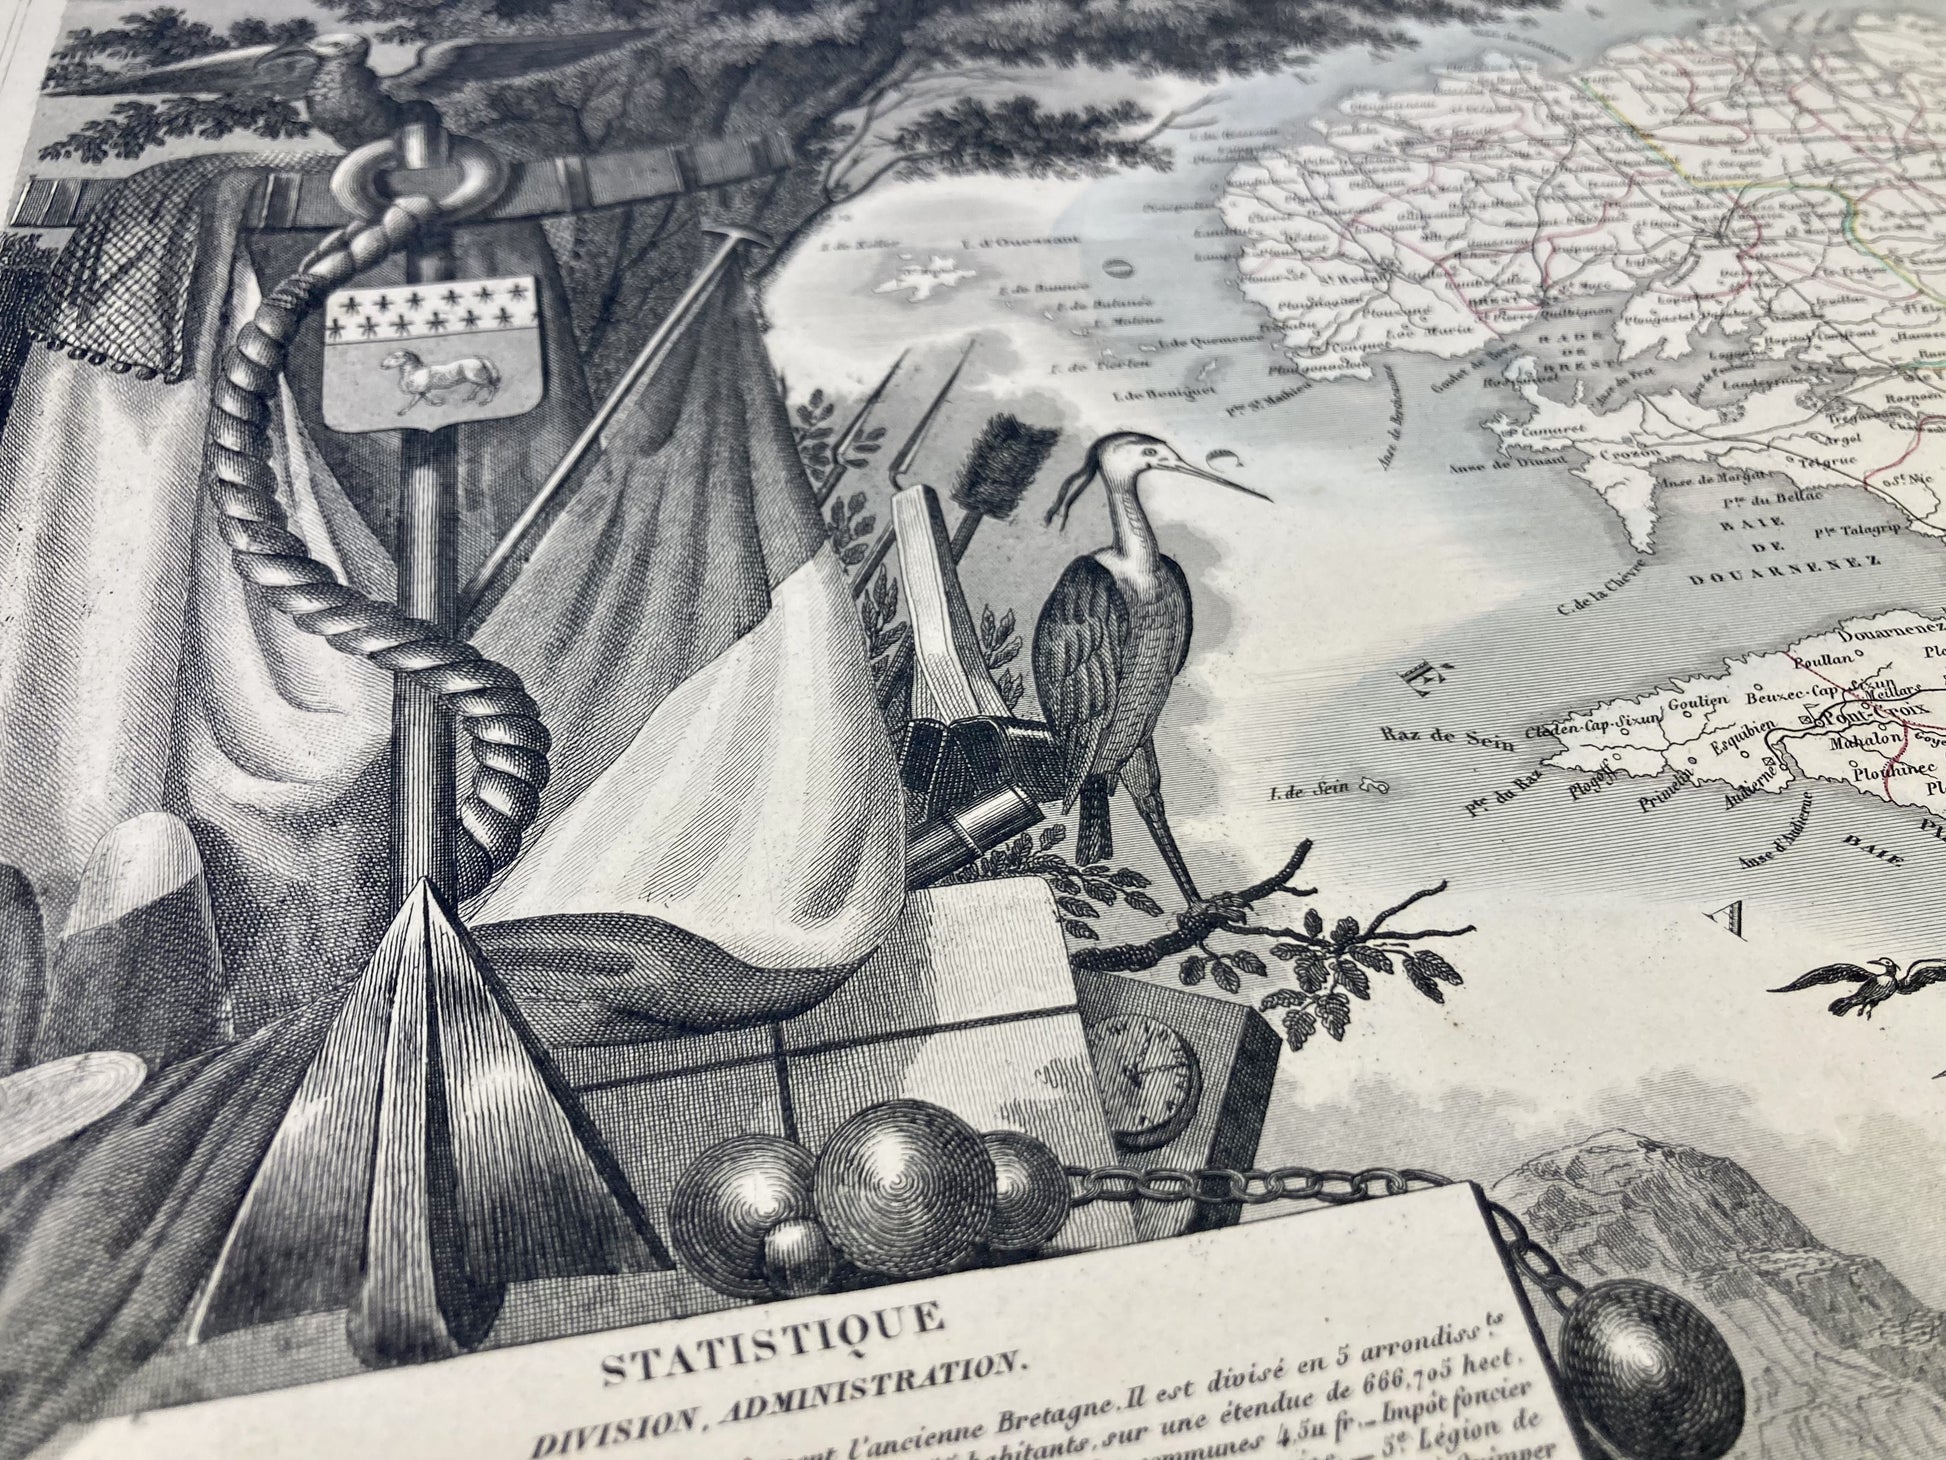 Détail de la carte ancienne illustrée du Finistère